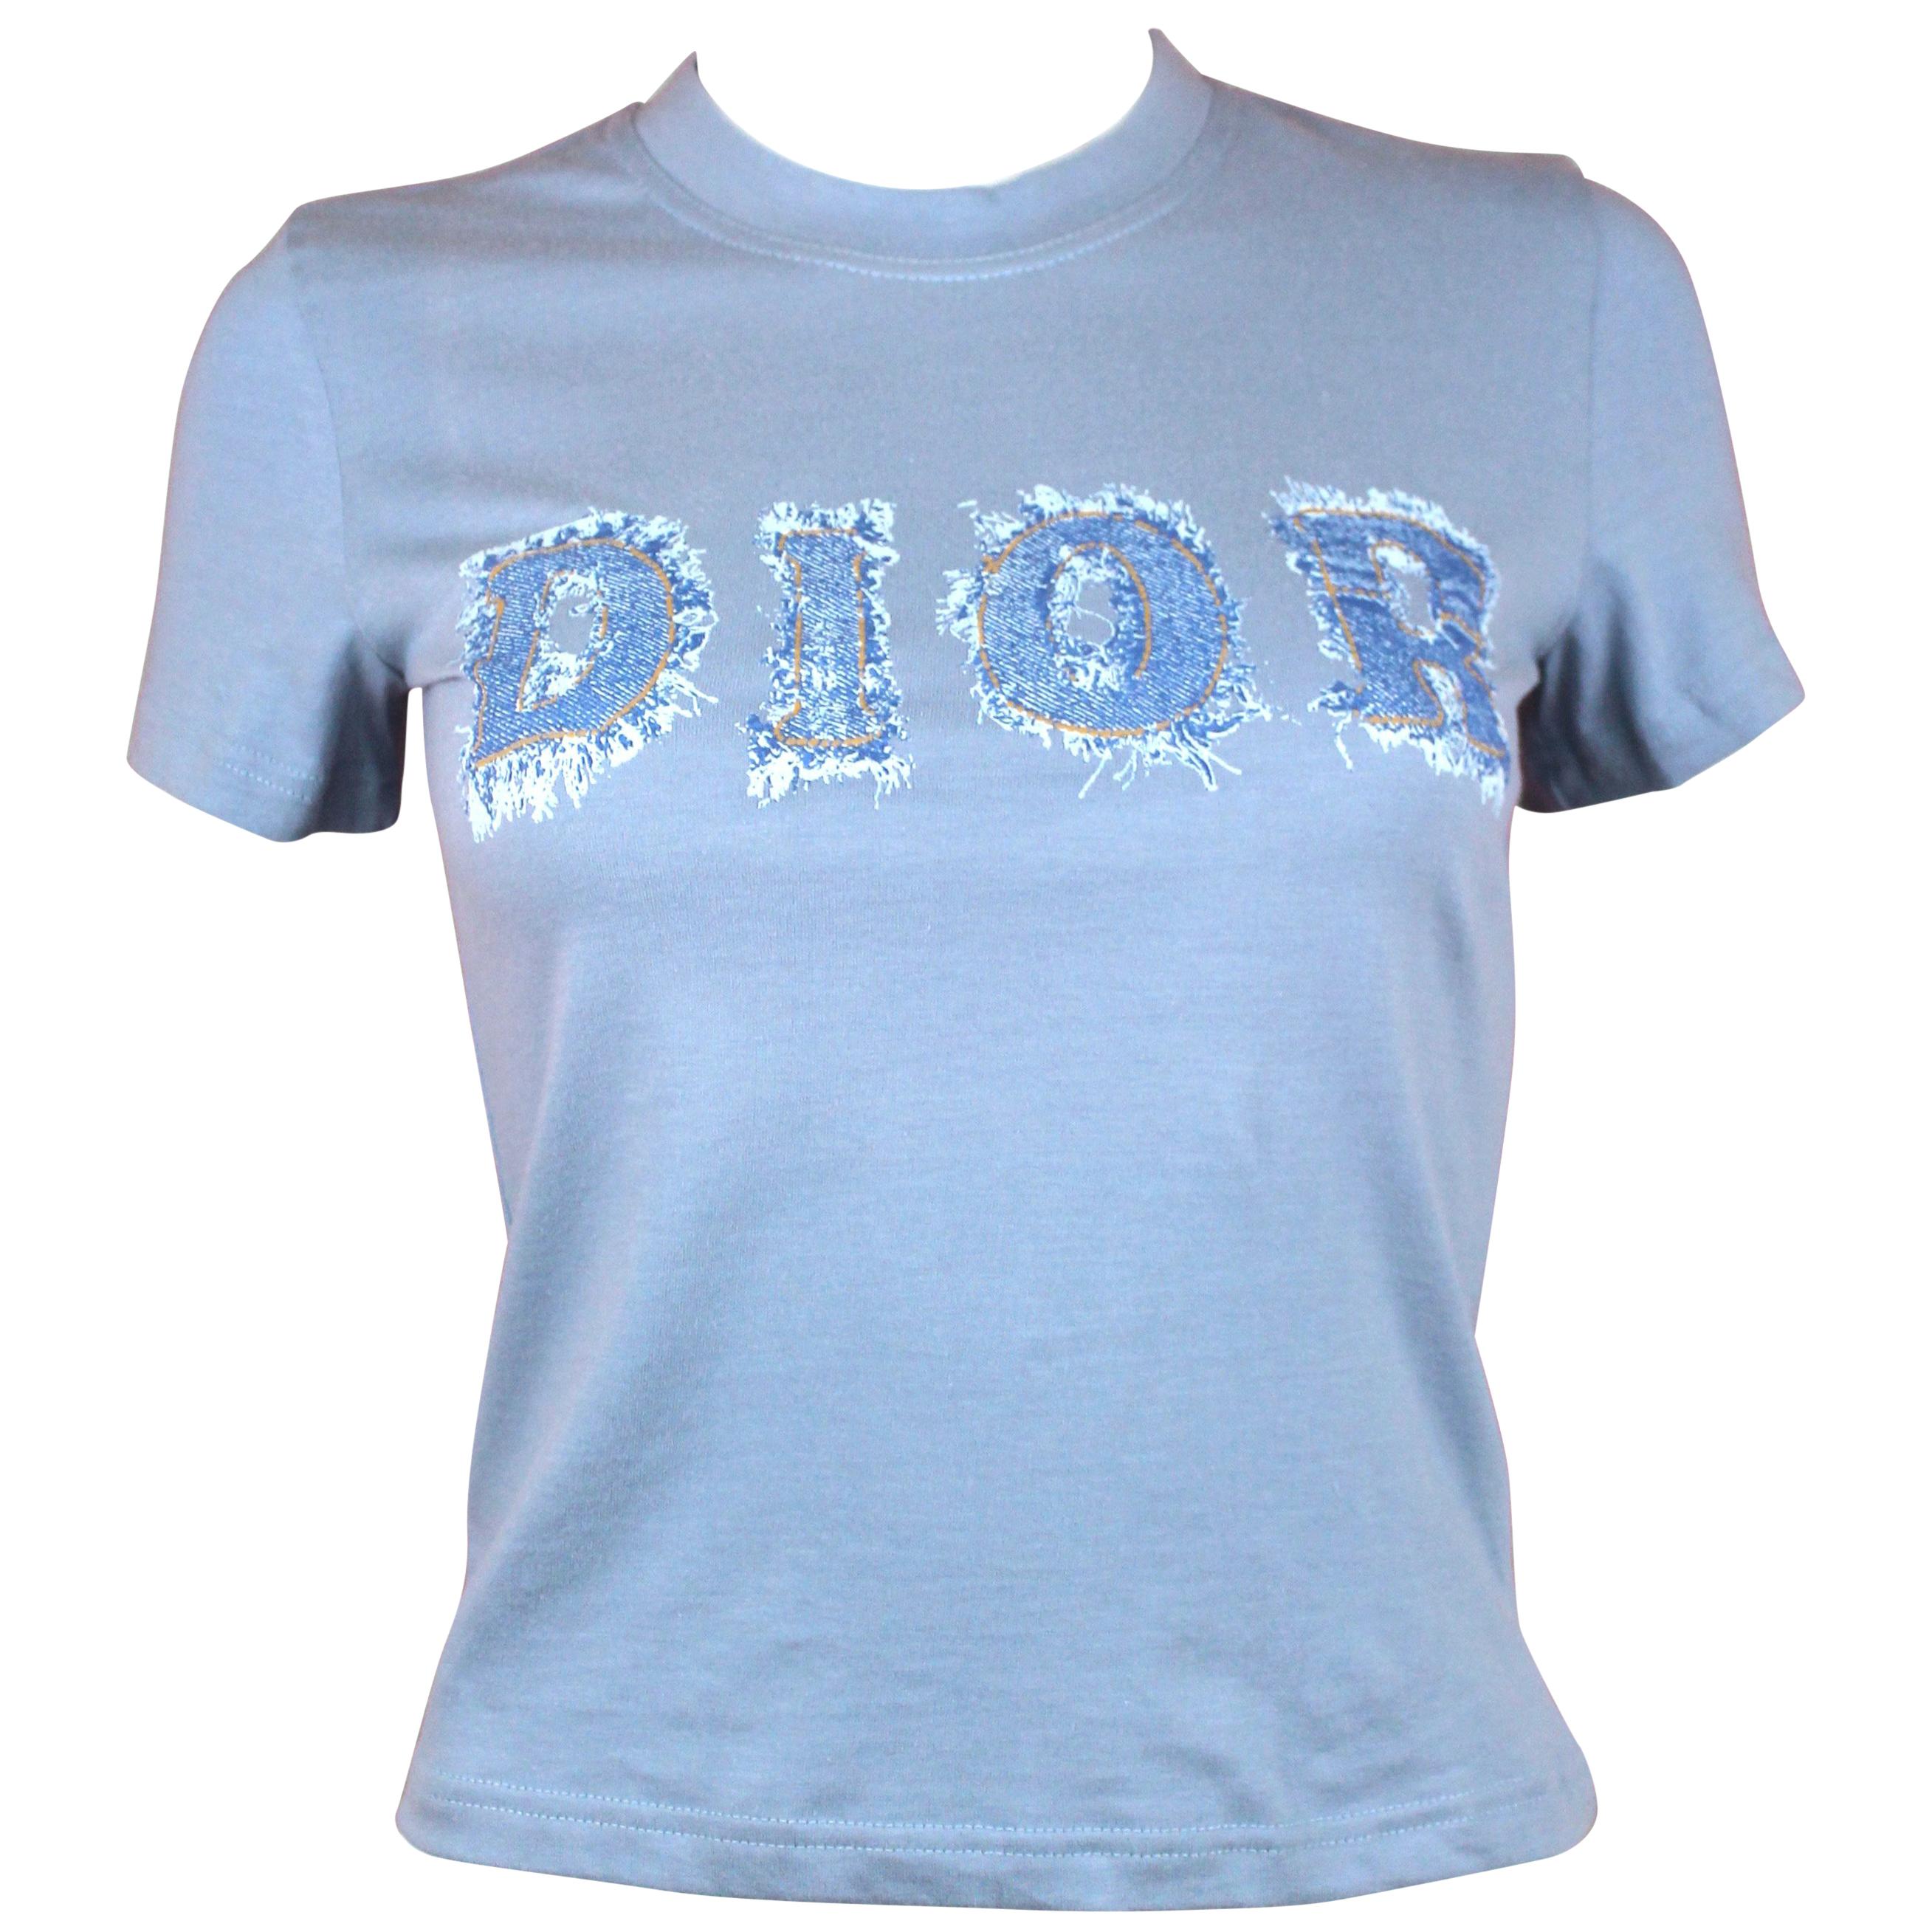 Christian Dior Denim Trompe L'oeil Cotton T-Shirt, c. 2000's, Size US 4